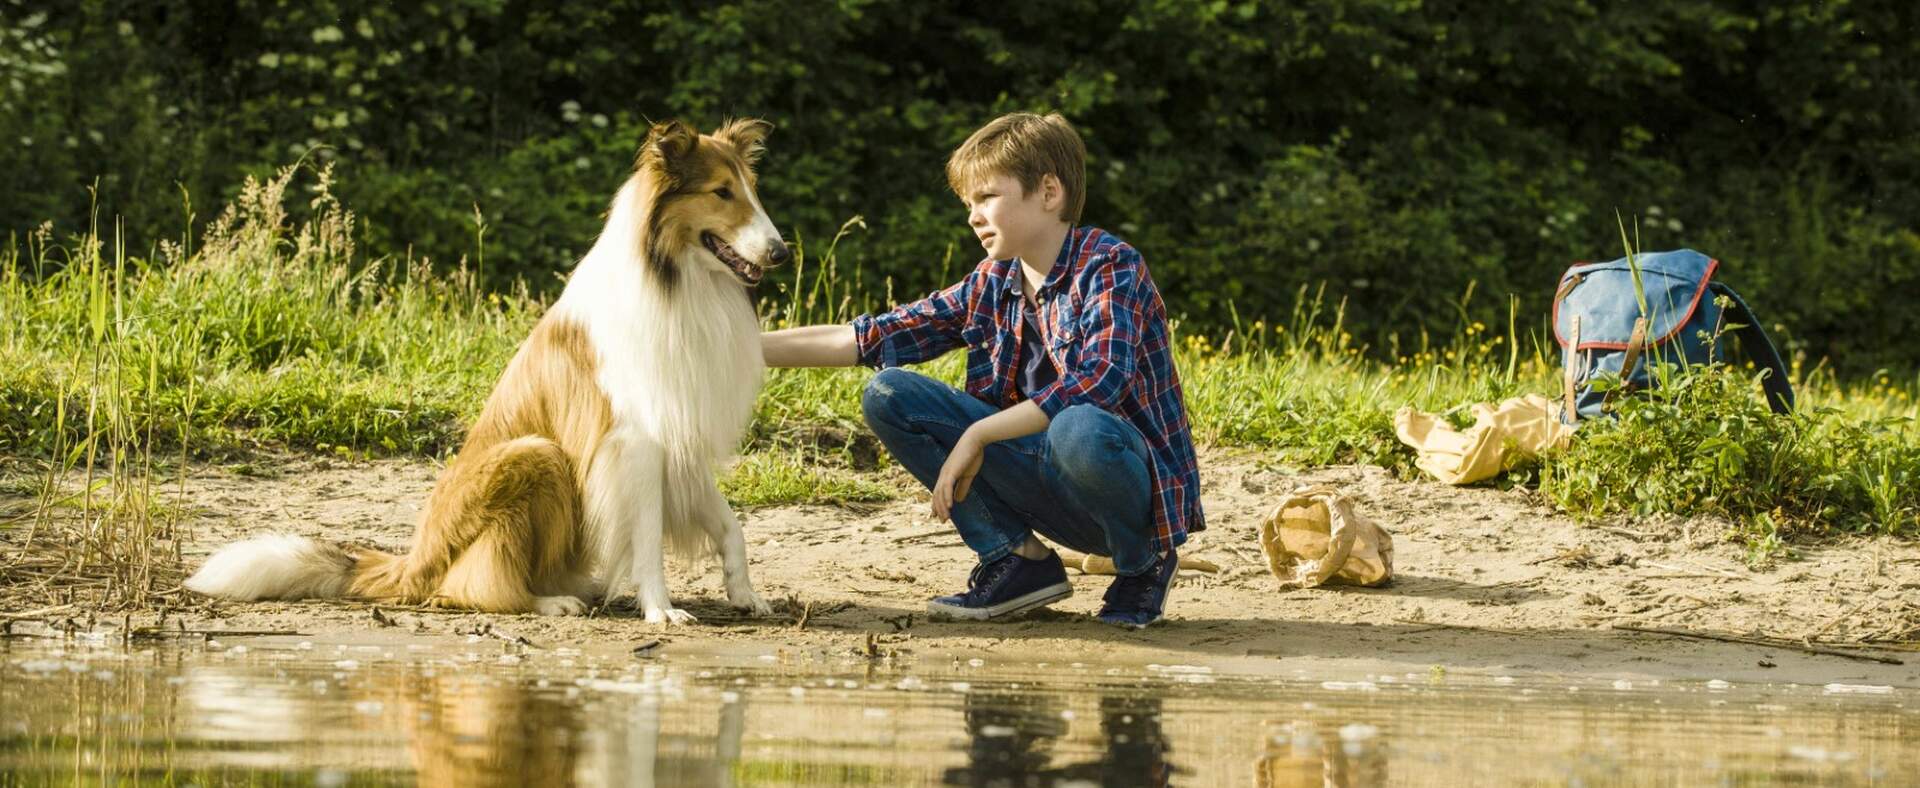 Lassie - Eine abenteuerliche Reise - Szenenbild 4 von 5